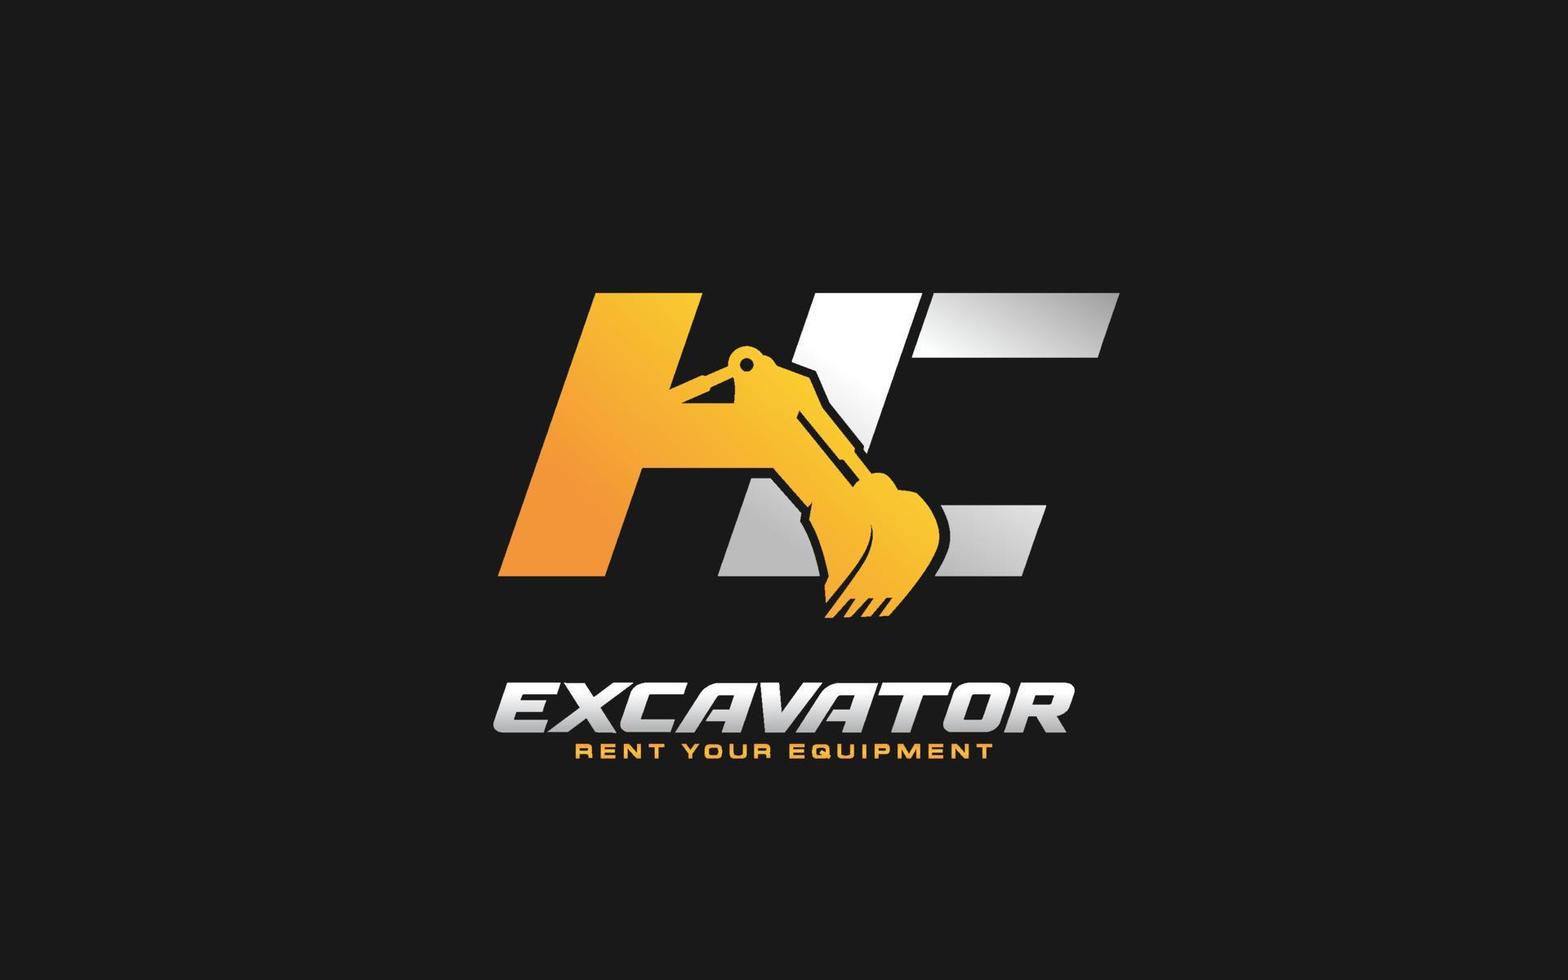 Excavadora de logotipo hc para empresa constructora. ilustración de vector de plantilla de equipo pesado para su marca.